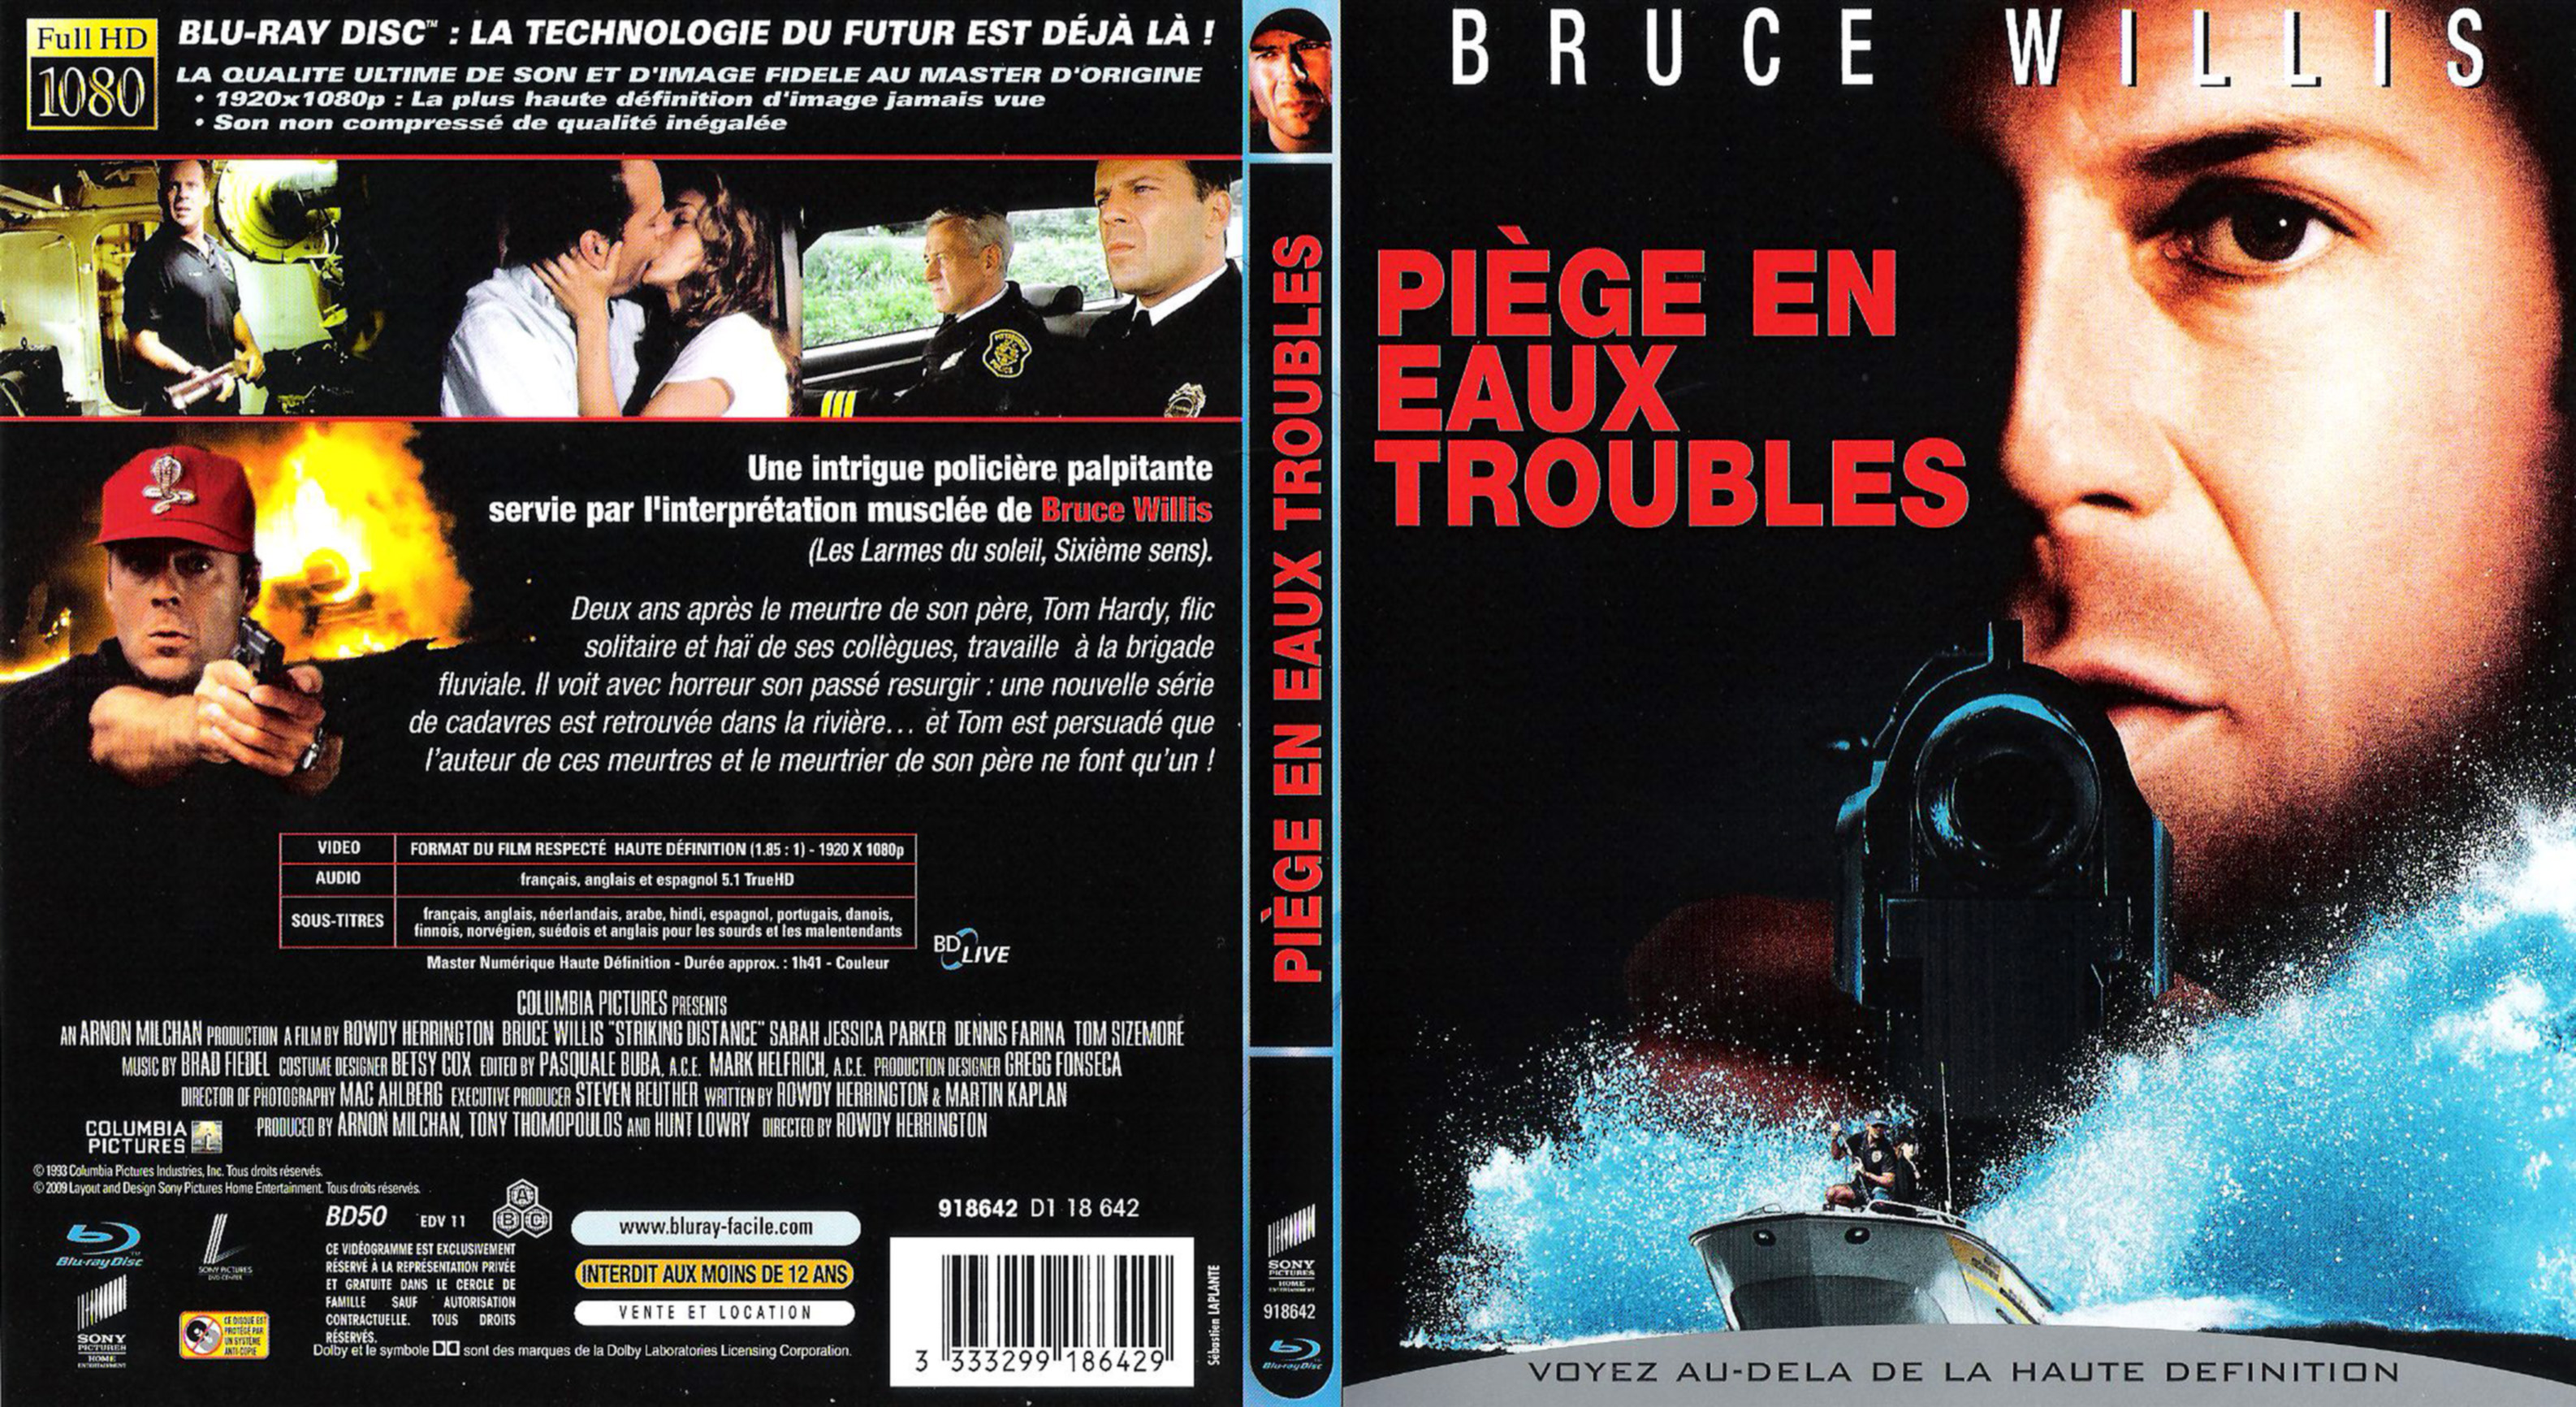 Jaquette DVD Piege en eaux troubles (BLU-RAY)